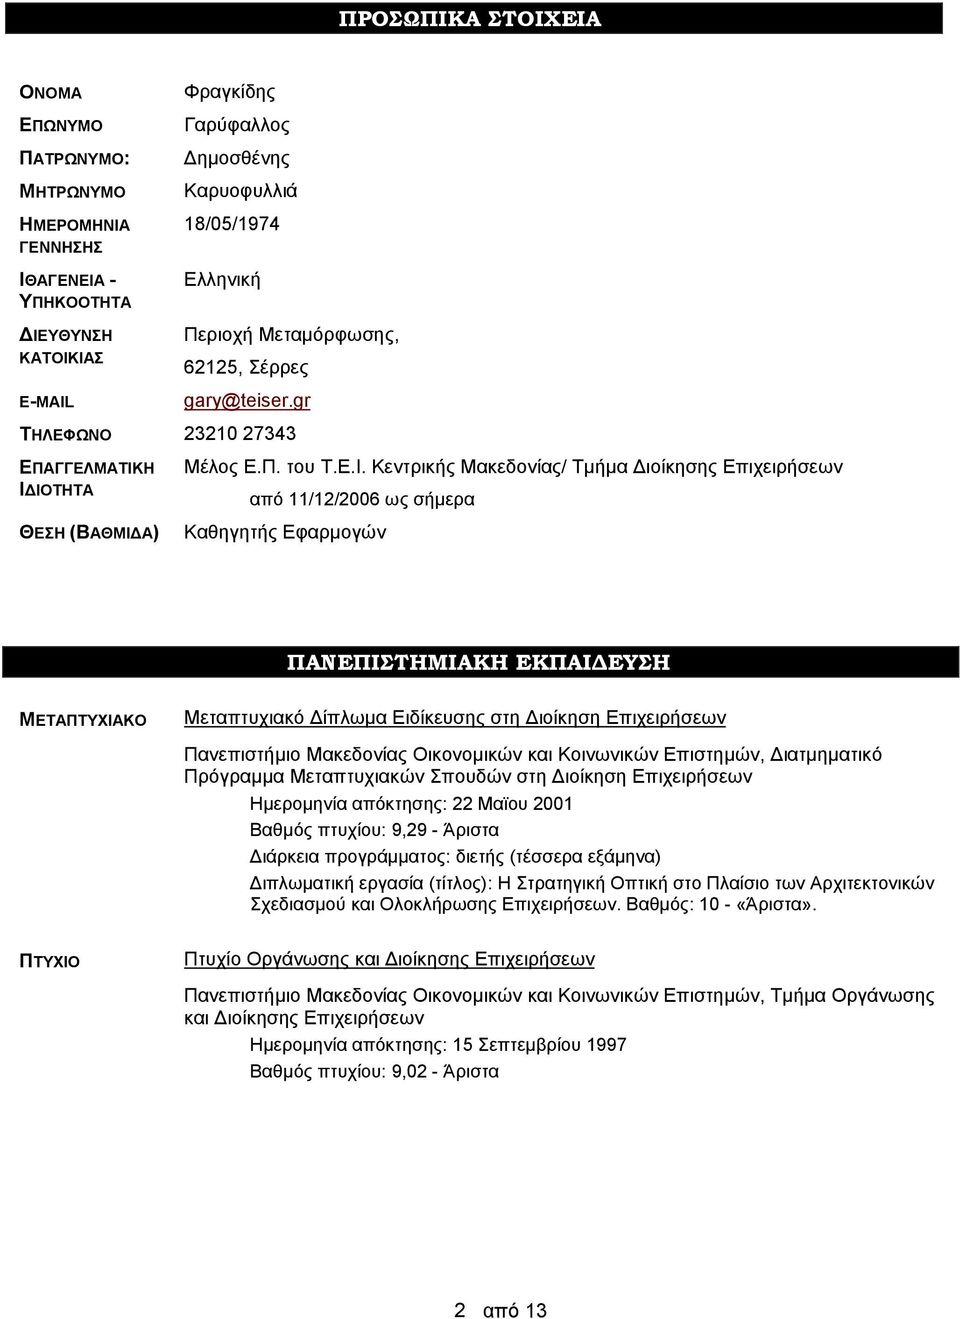 Η ΙΔΙΟΤΗΤΑ ΘΕΣΗ (ΒΑΘΜΙΔΑ) Μέλος Ε.Π. του Τ.Ε.Ι. Κεντρικής Μακεδονίας/ Τμήμα Διοίκησης Επιχειρήσεων από 11/12/2006 ως σήμερα Καθηγητής Εφαρμογών ΠΑΝΕΠΙΣΤΗΜΙΑΚΗ ΕΚΠΑΙΔΕΥΣΗ ΜΕΤΑΠΤΥΧΙΑΚΟ Μεταπτυχιακό